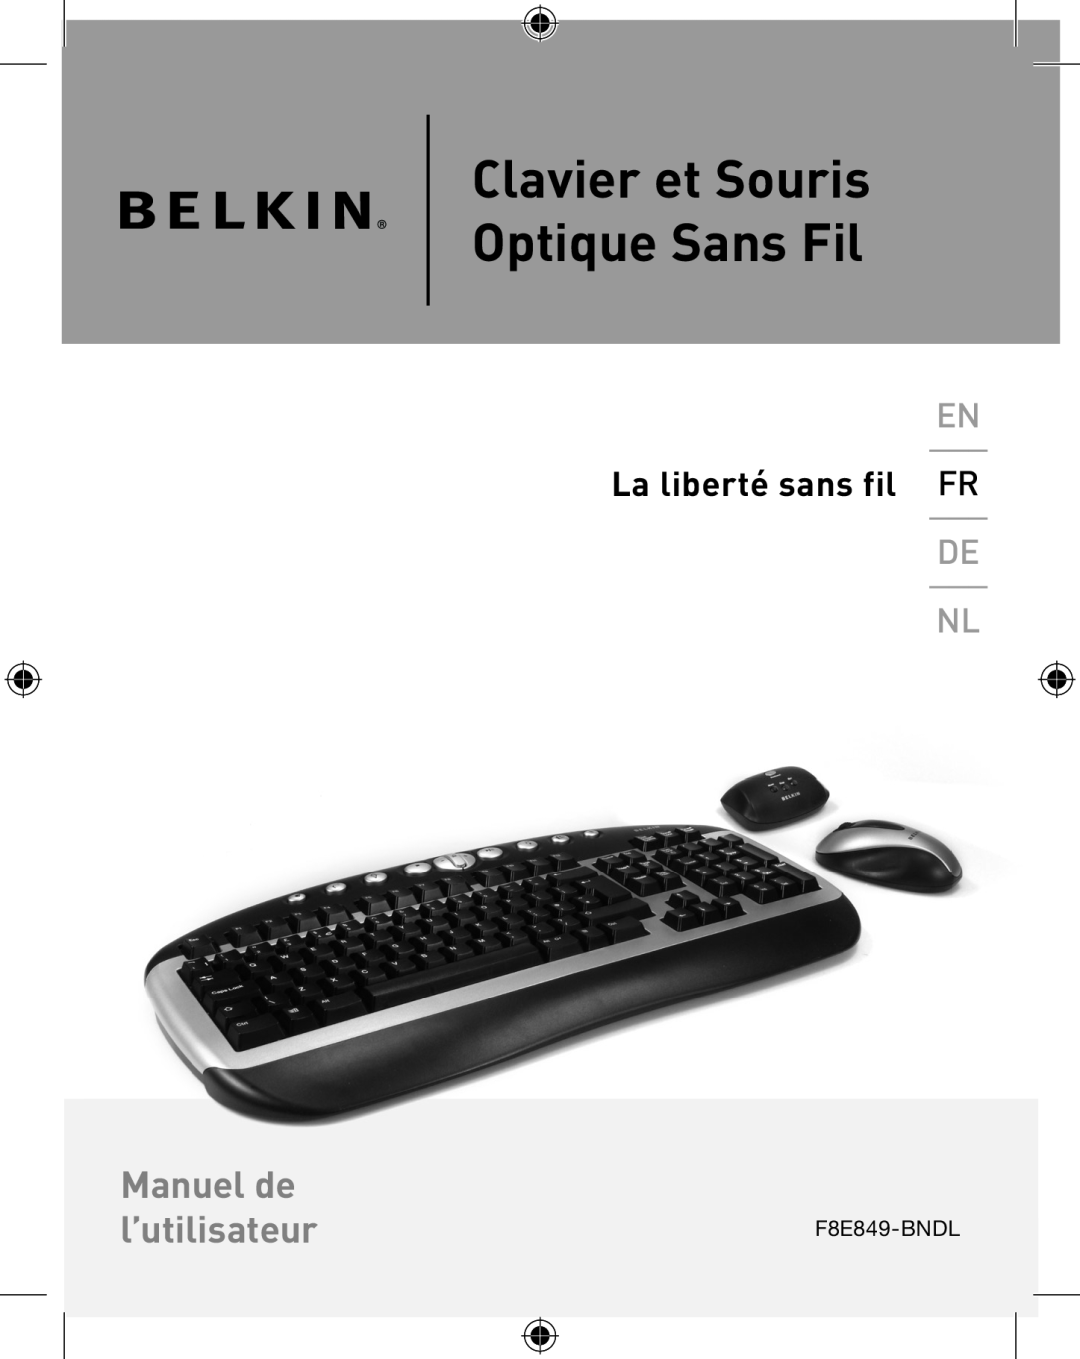 Belkin P74775UK, F8E849-BNDL user manual Clavier et Souris Optique Sans Fil, Manuel de l’utilisateur, La liberté sans fil FR 